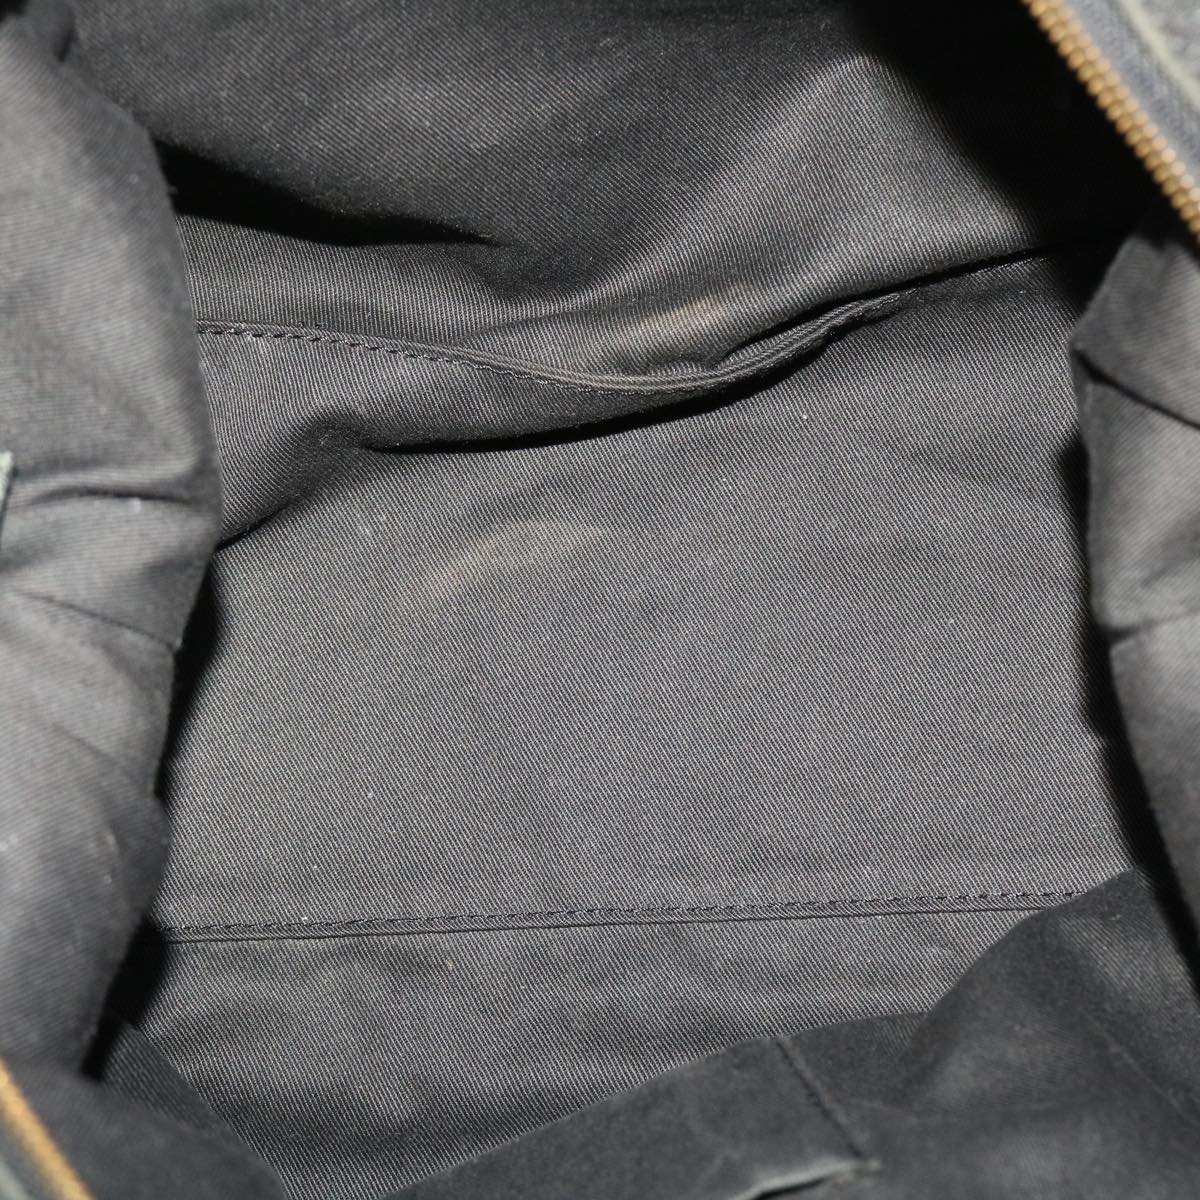 SAINT LAURENT Shoulder Bag Leather Black Auth bs5714